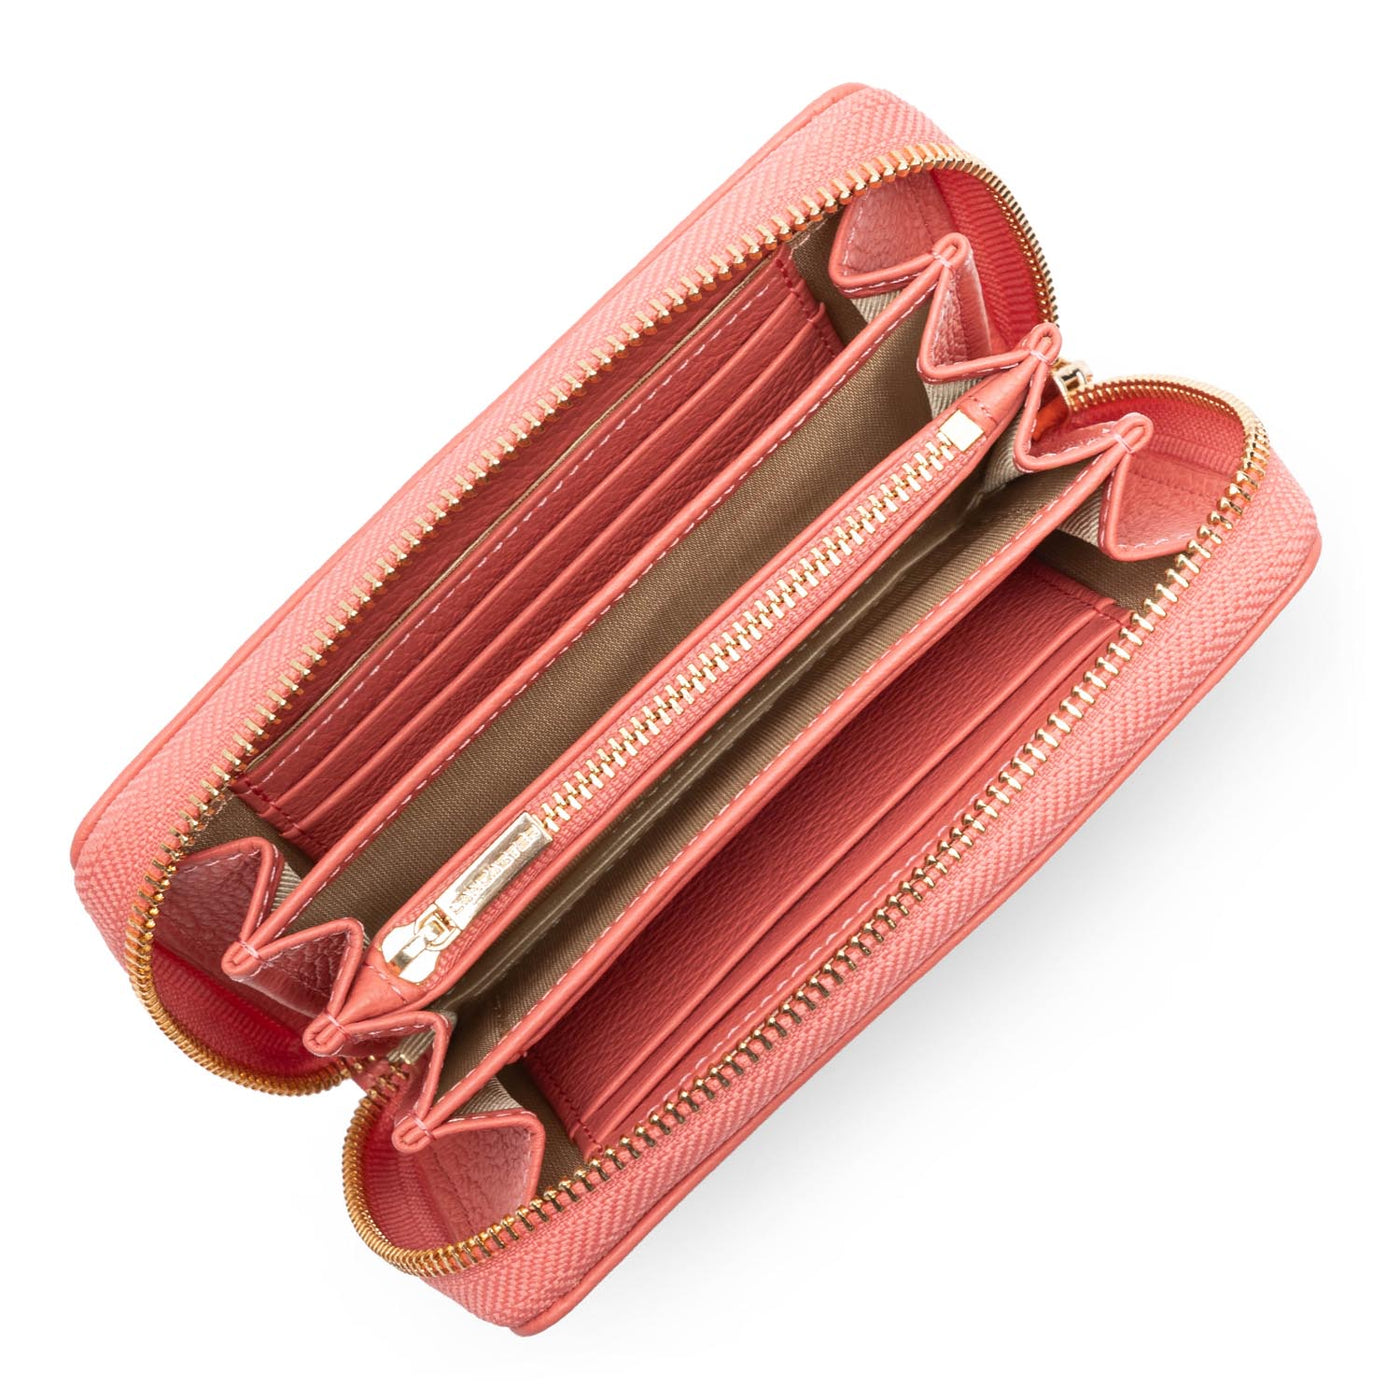 organizer wallet - dune #couleur_rose-blush